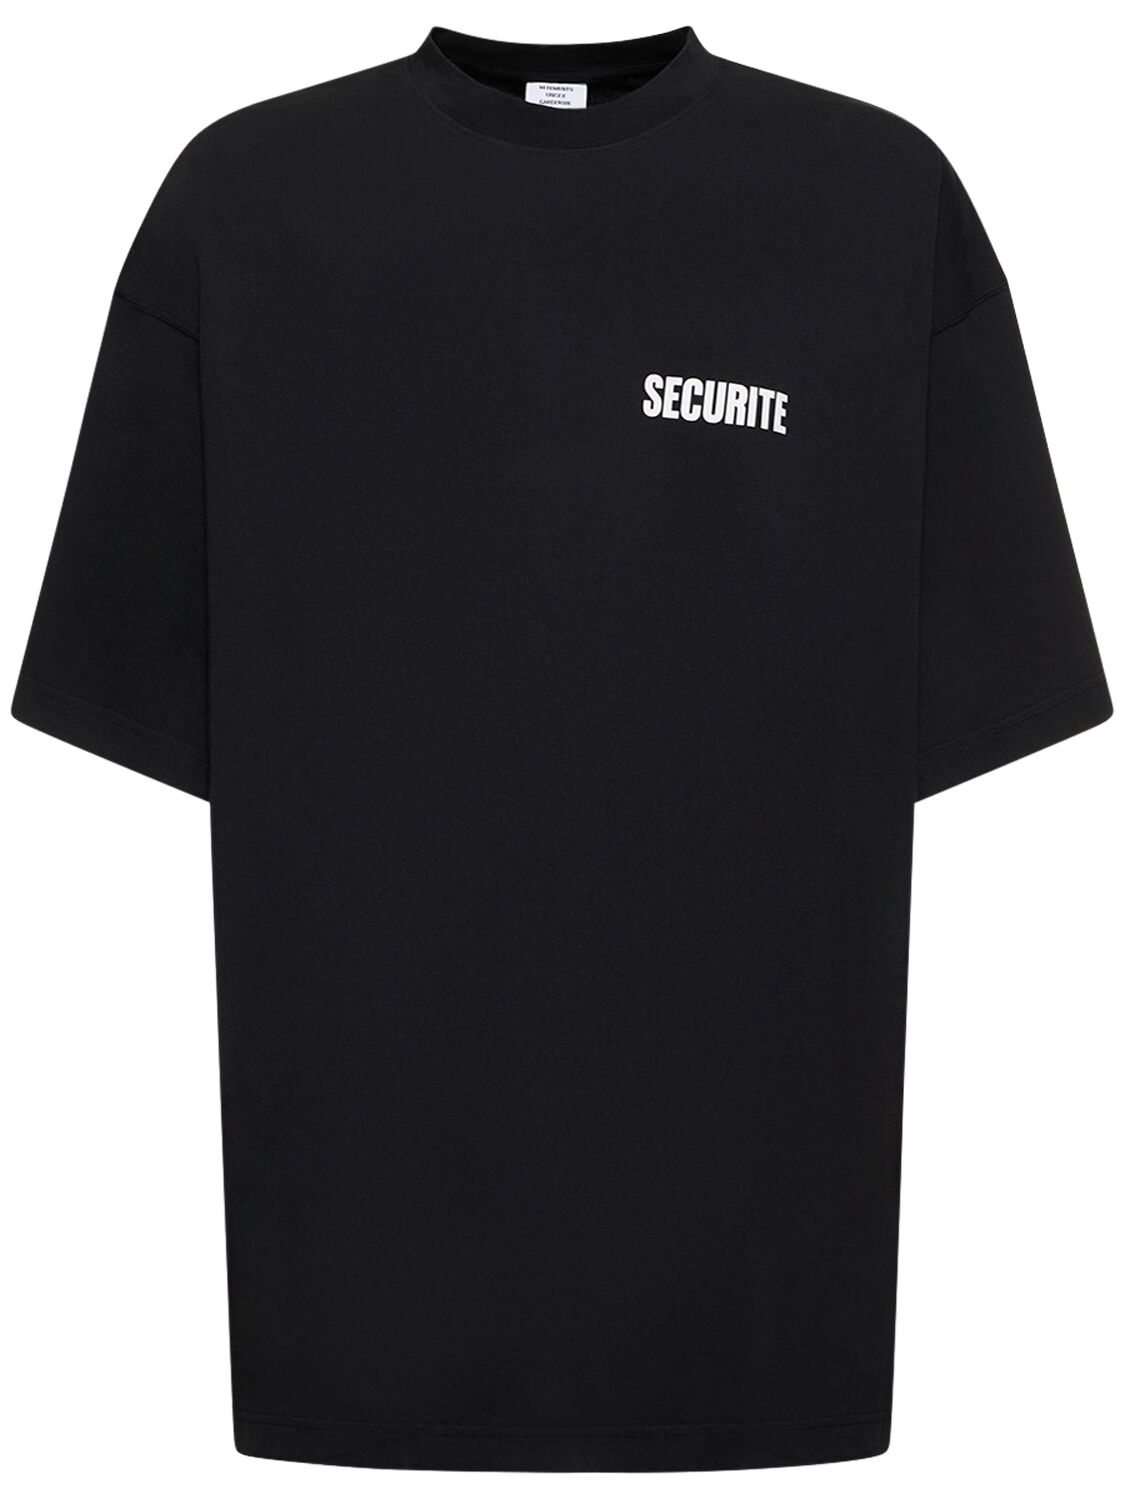 T-shirt Securite In Cotone Con Stampa - VETEMENTS - Modalova